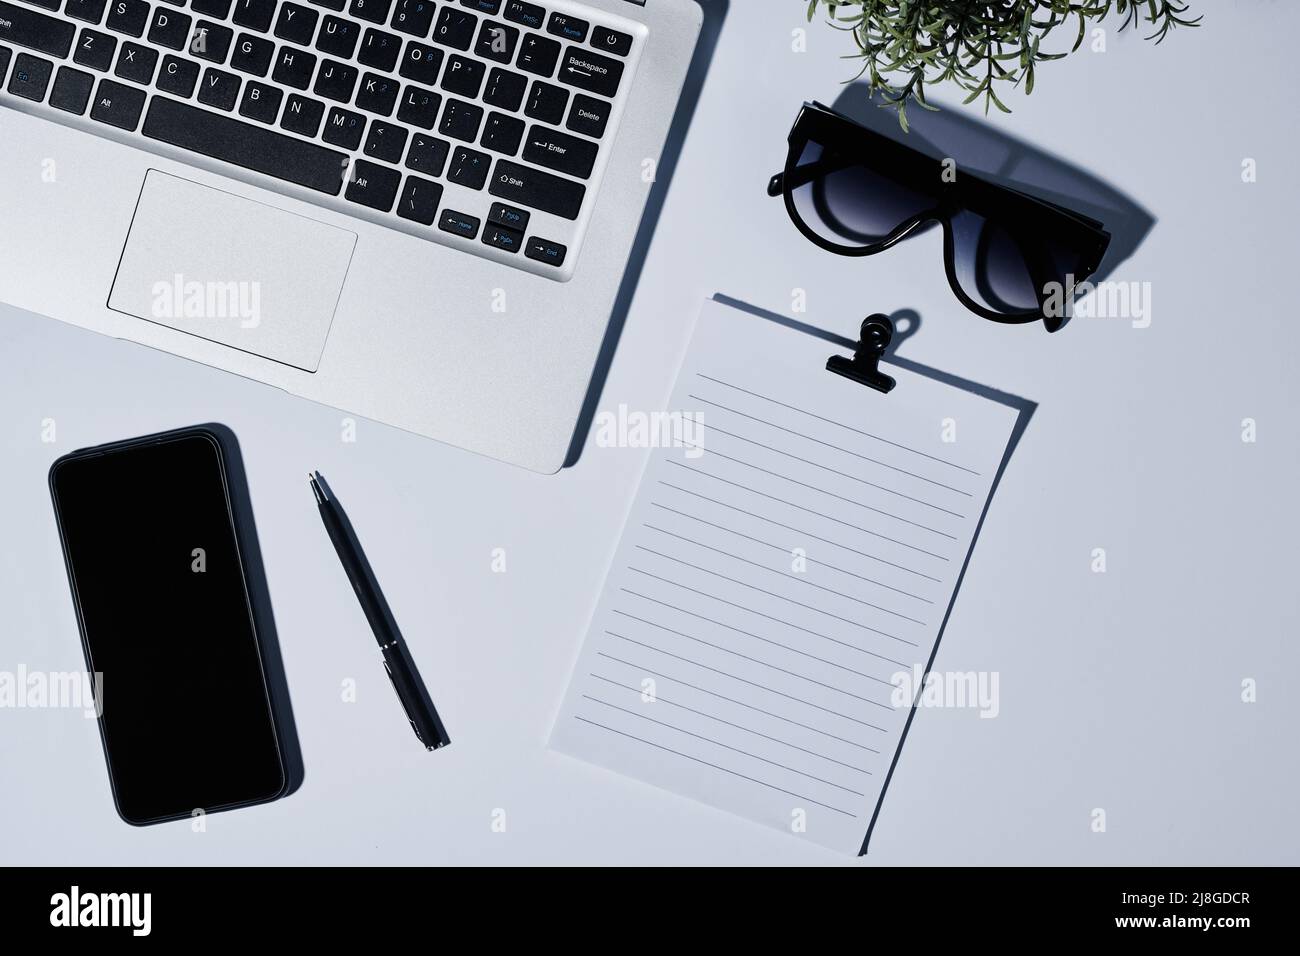 Composition d'un clavier d'ordinateur portable, papier vierge avec clip, lunettes de soleil, stylo, et smartphone sur le lieu de travail de la personne d'affaires moderne Banque D'Images